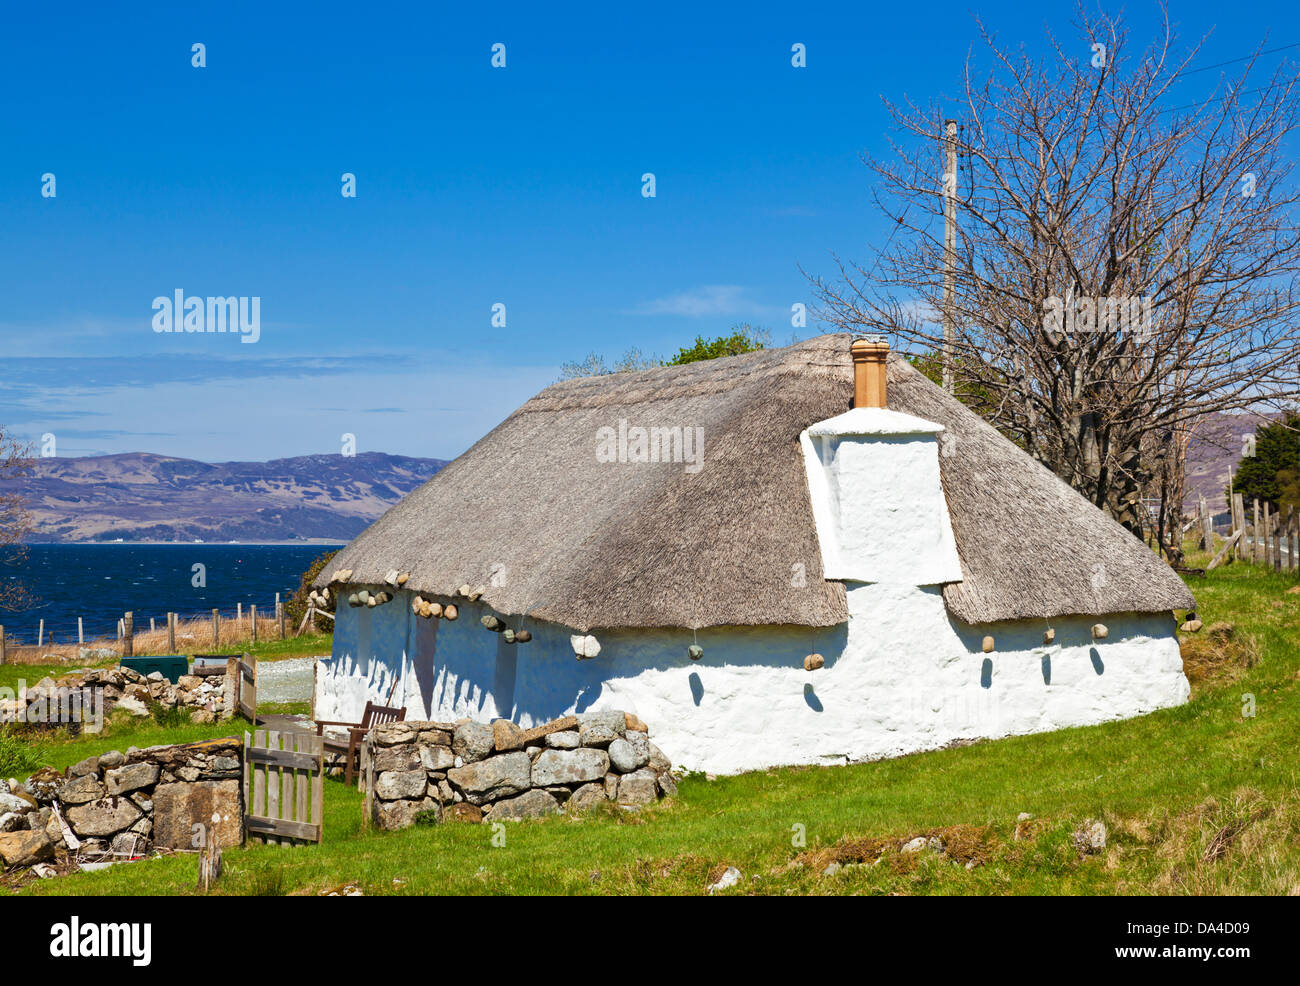 In vecchio stile tradizionale tetto in paglia cottage sull'Isola di Skye delle Highlands e delle isole della Scozia UK GB EU Europe Foto Stock